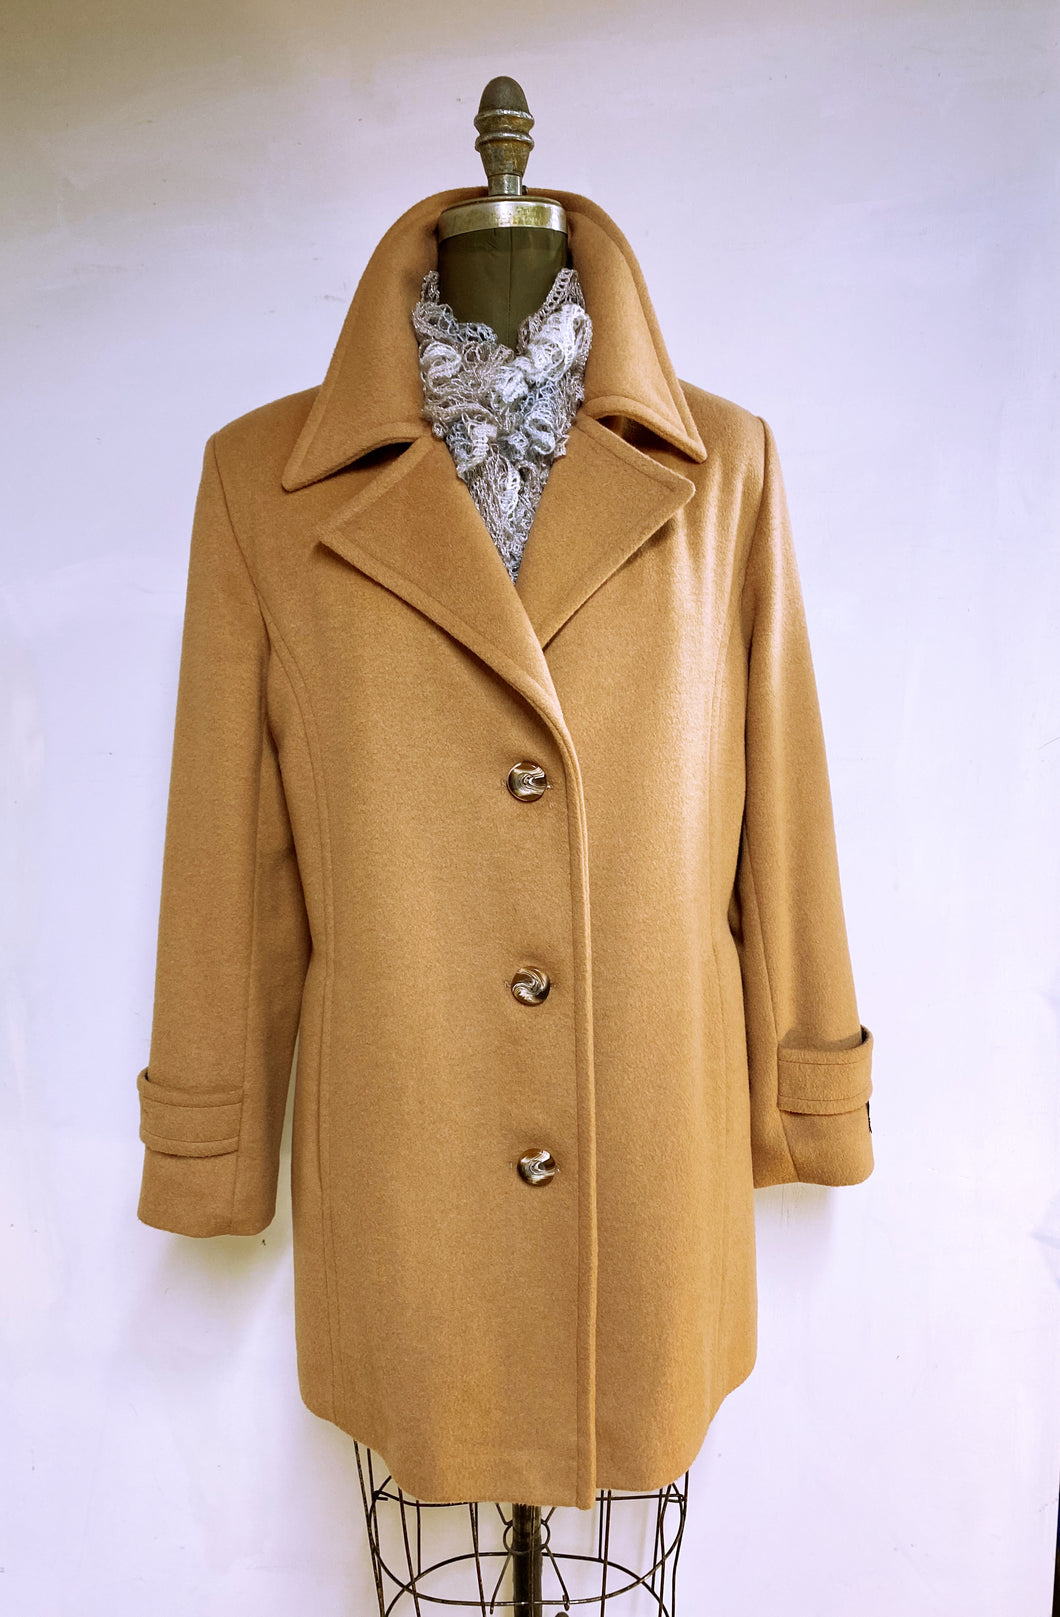 Lorianne Car Coat - 50% Cashmere & Wool Blend